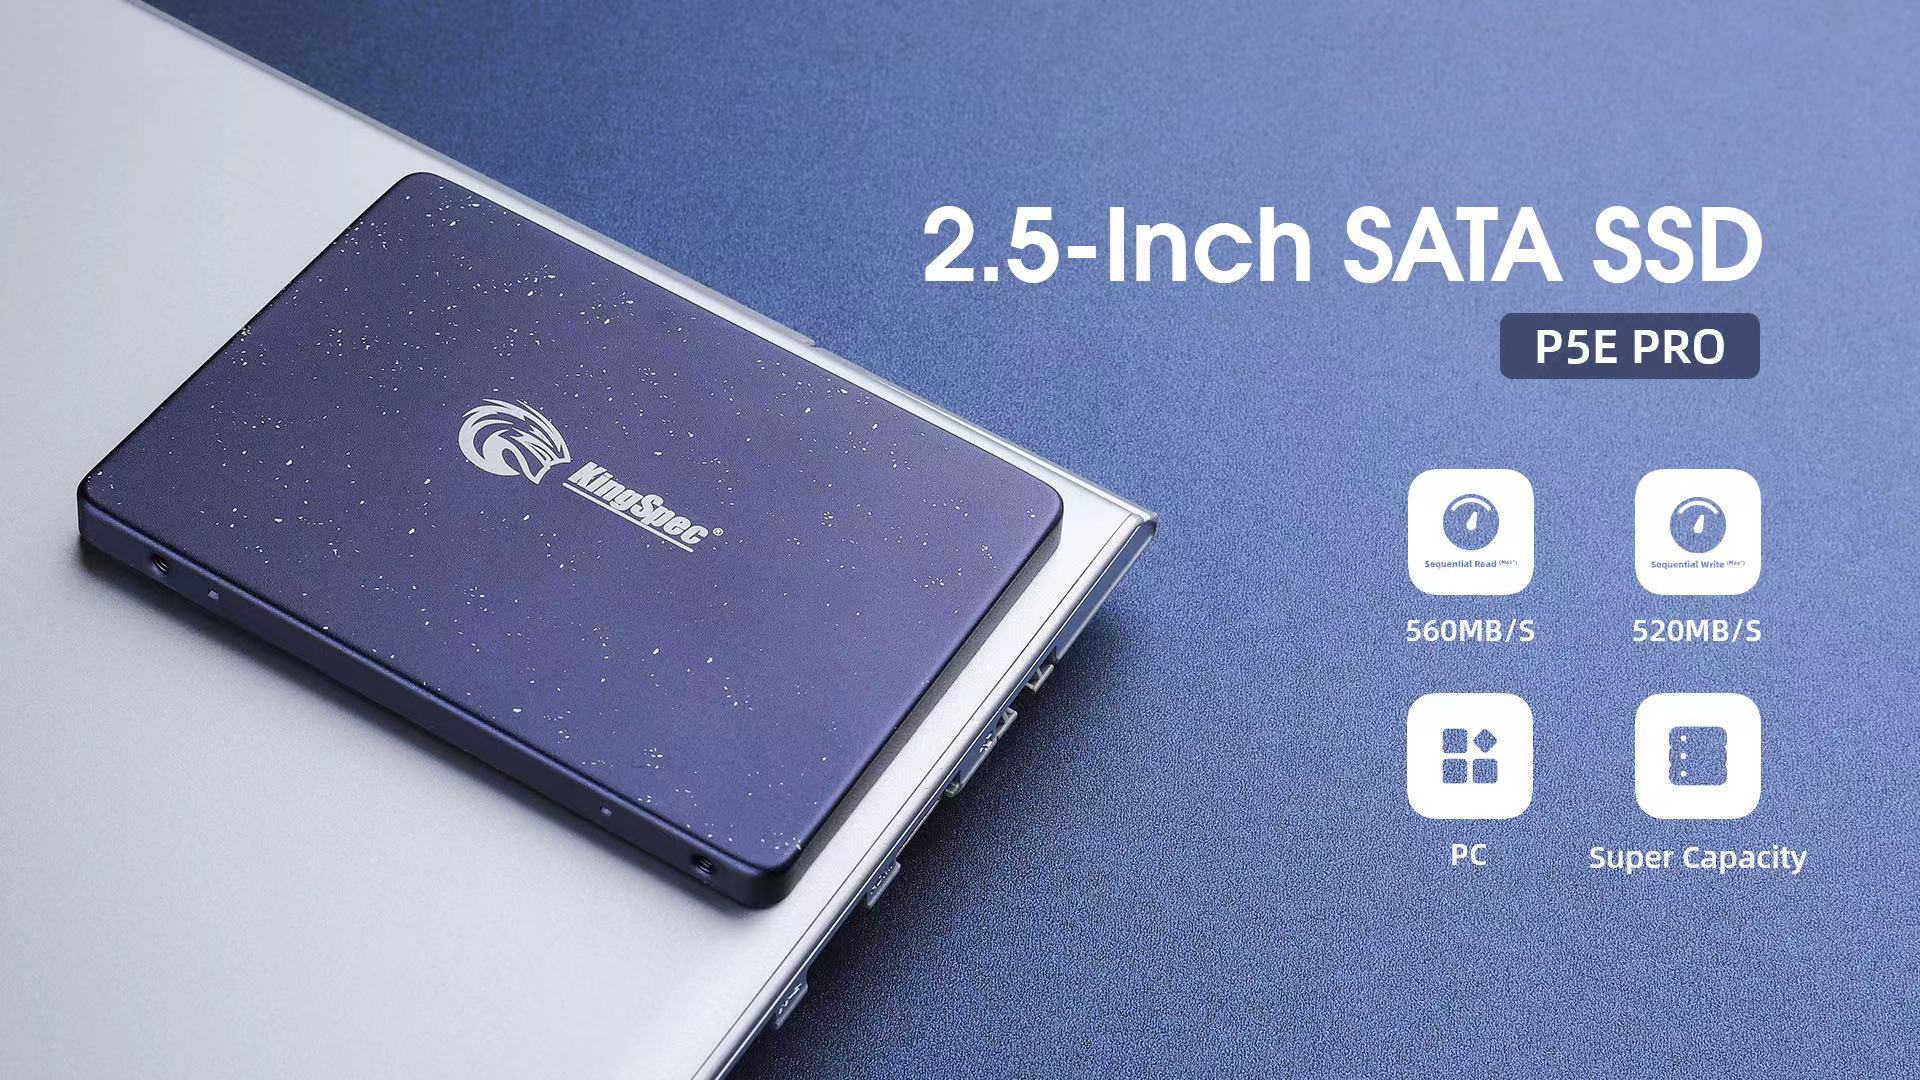 2.5 Inch P5e Pro Series SATA SSD